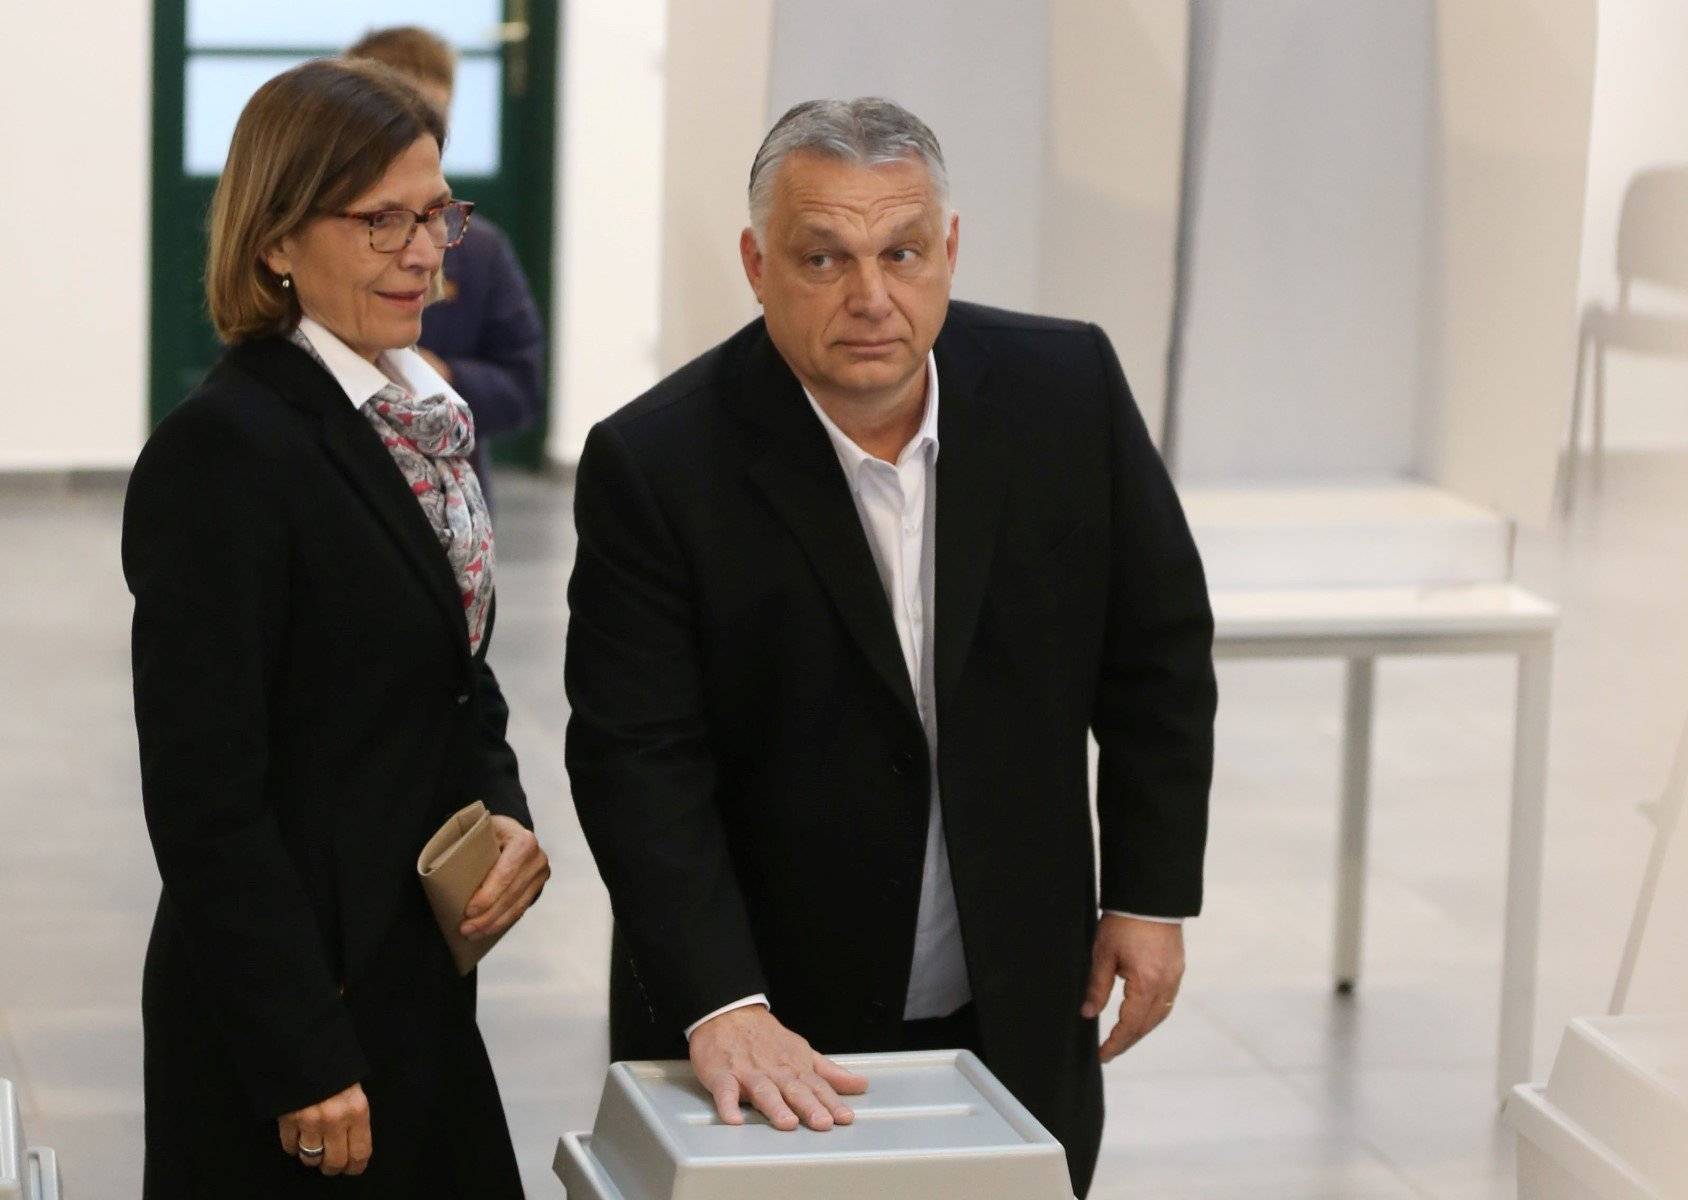 Viktor Orbán z żoną nacylony nad urną wyborczą, na której trzyma rękę